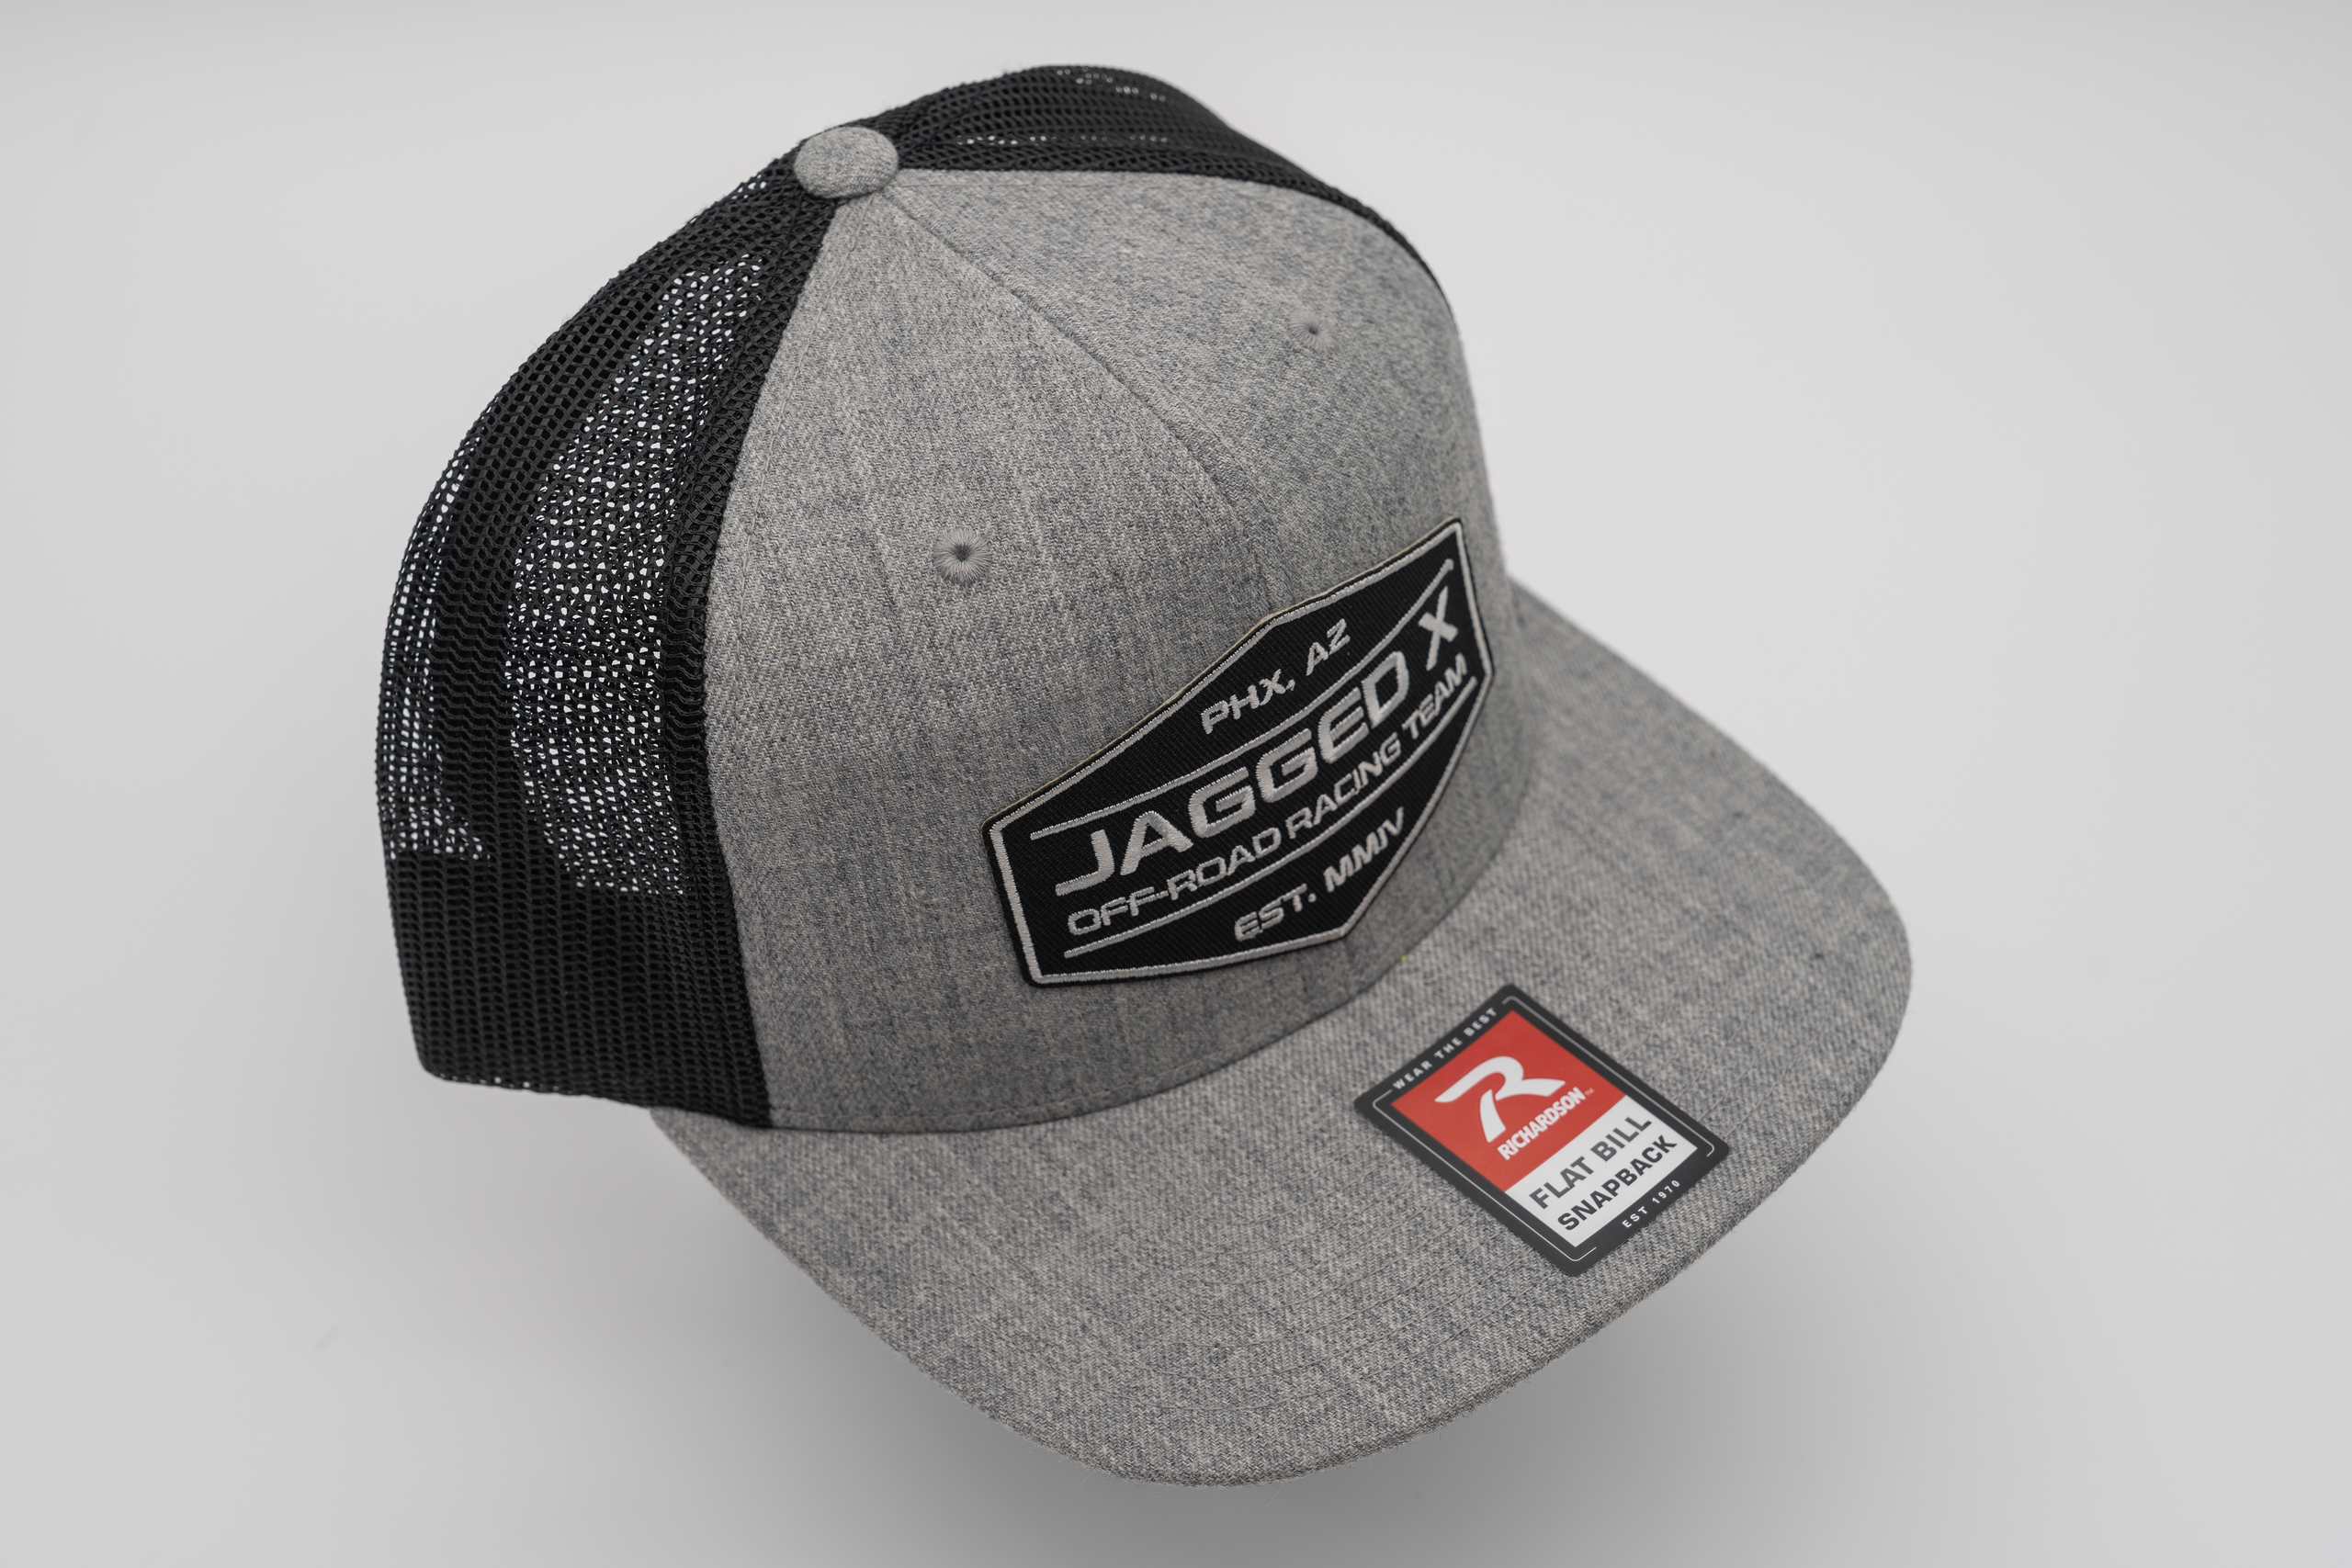 jagged x offroad trucker hat gray black 4